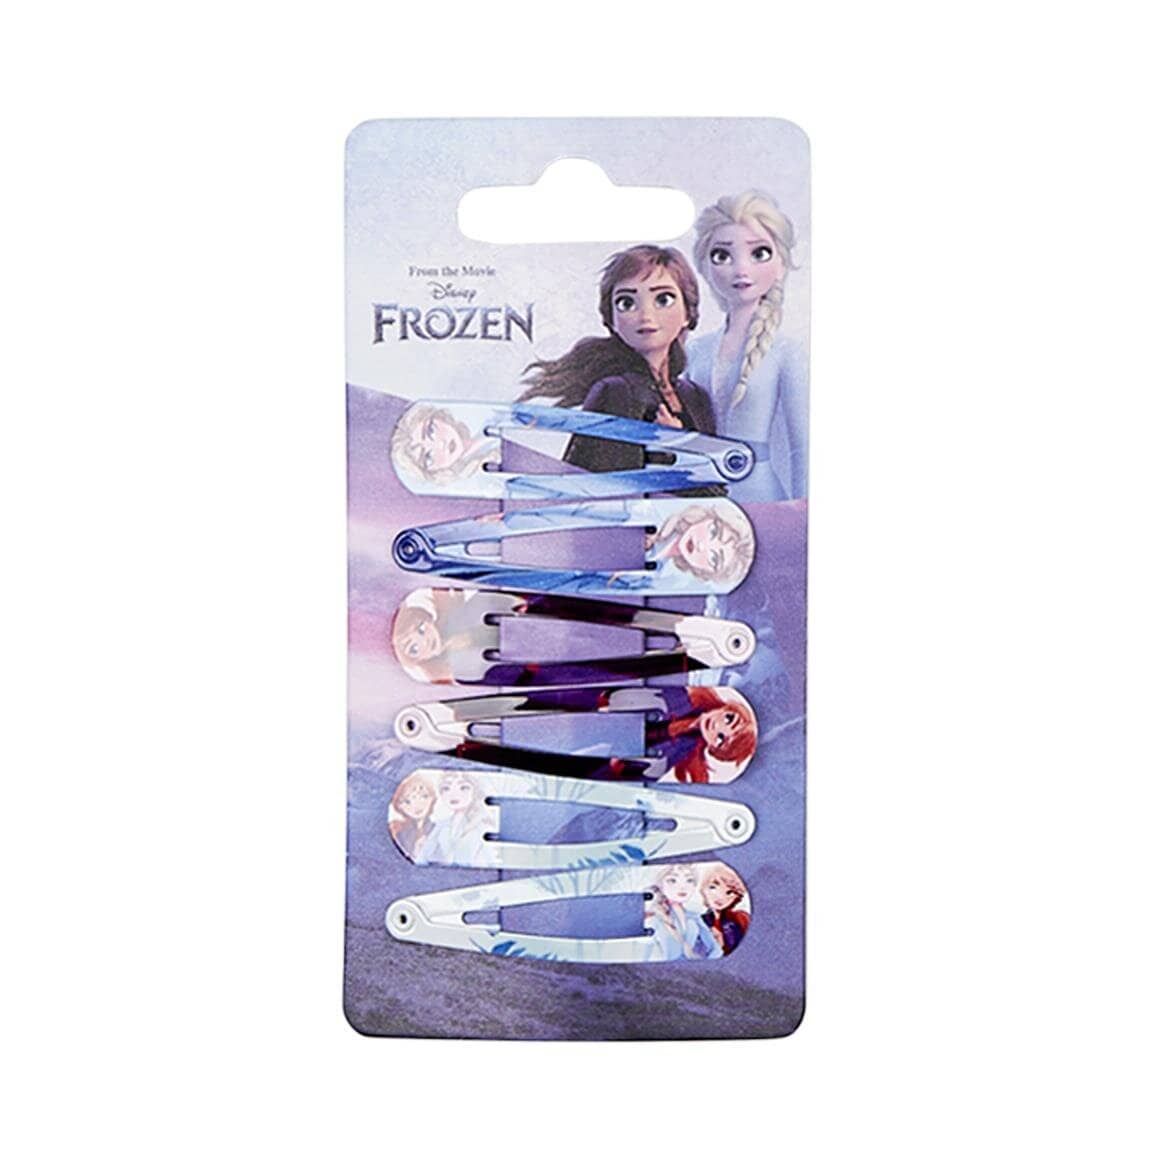 Disney Frozen - Haarspangen 6er Pack